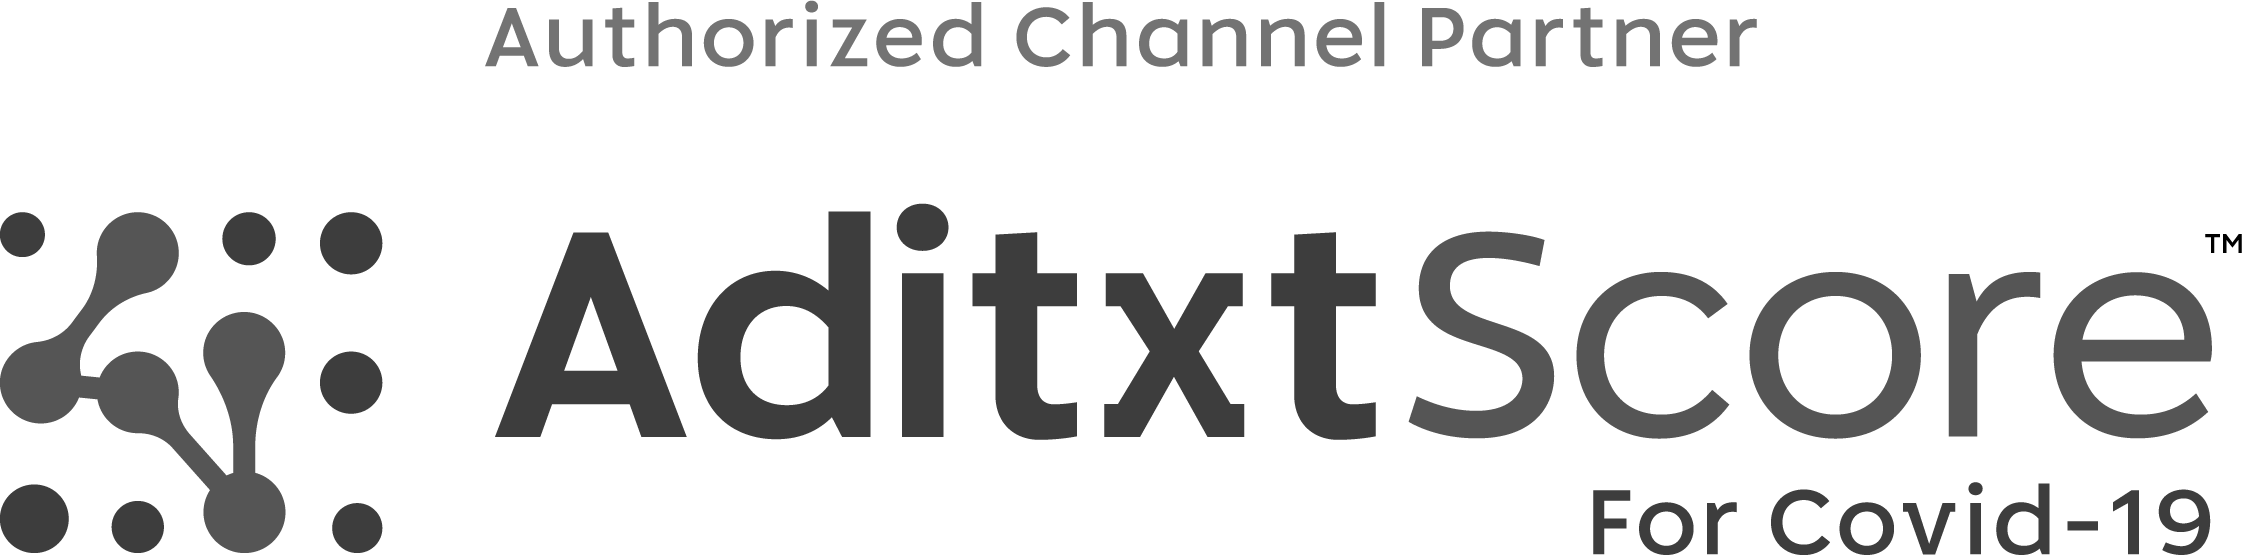 aditxt_authorized_channel_partner-logo-gray-rgb